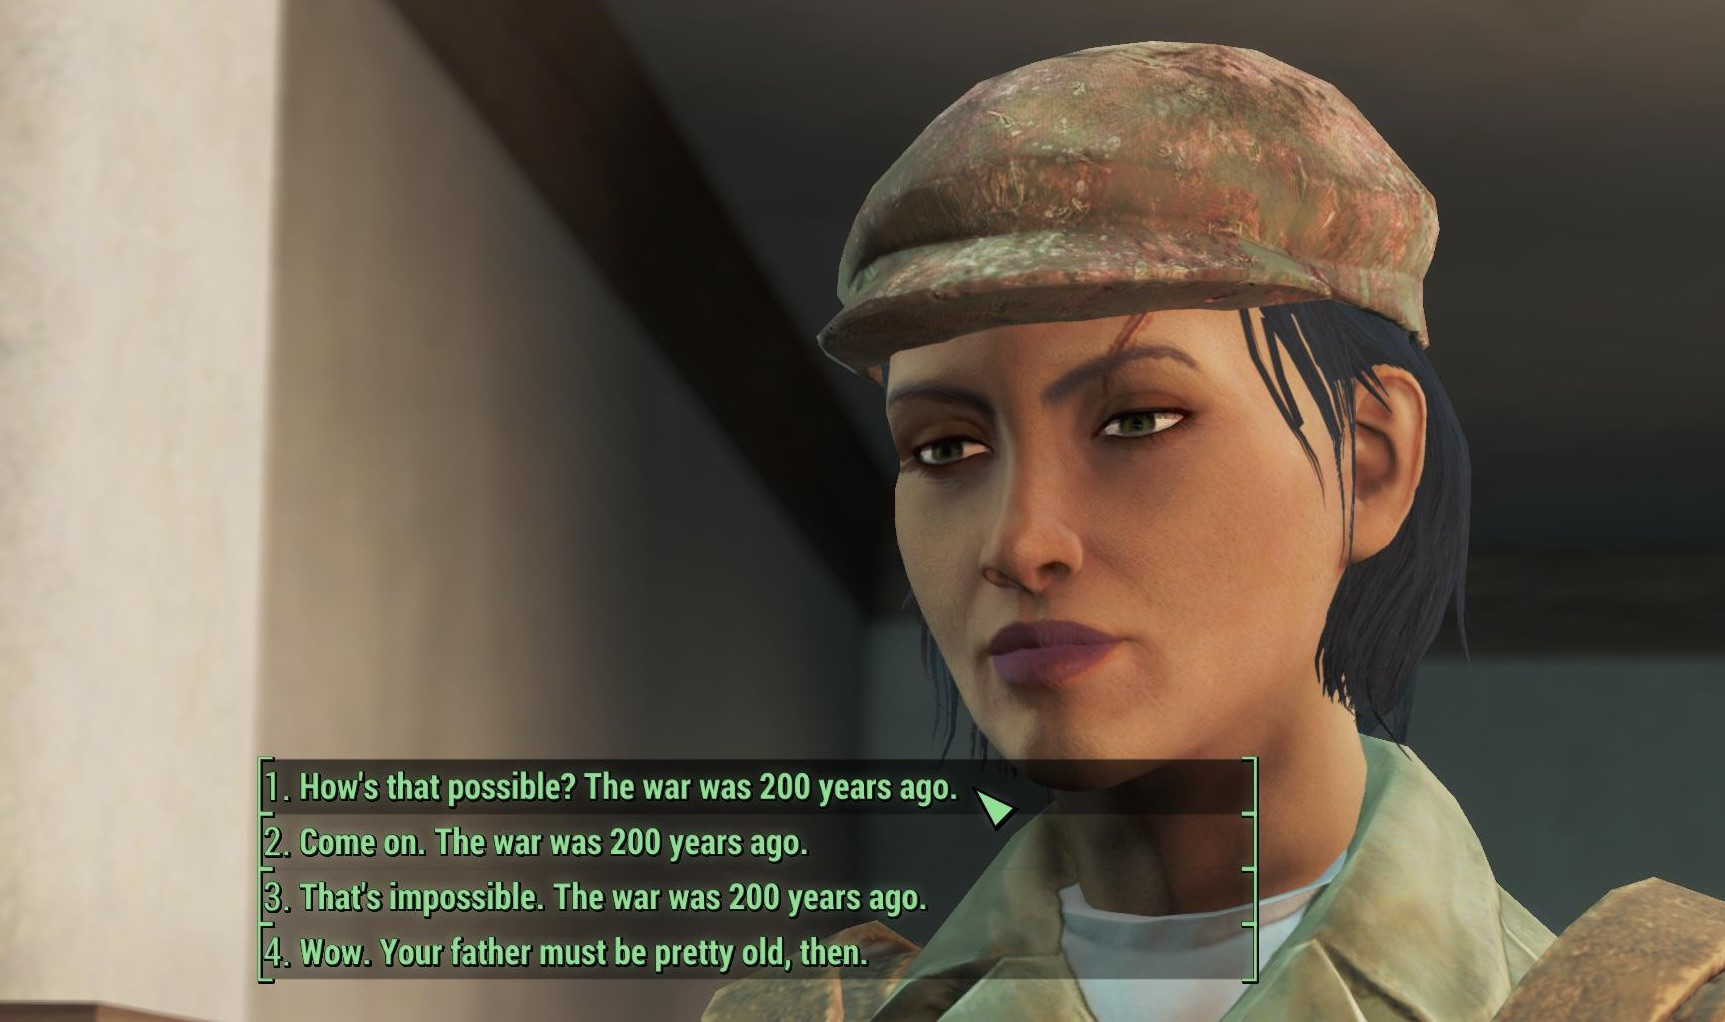 Dialogue mod. Диалоговая система Fallout 4. Таинственная госпожа фоллаут 4. Фоллаут 4 случайная встреча морской дьявол.